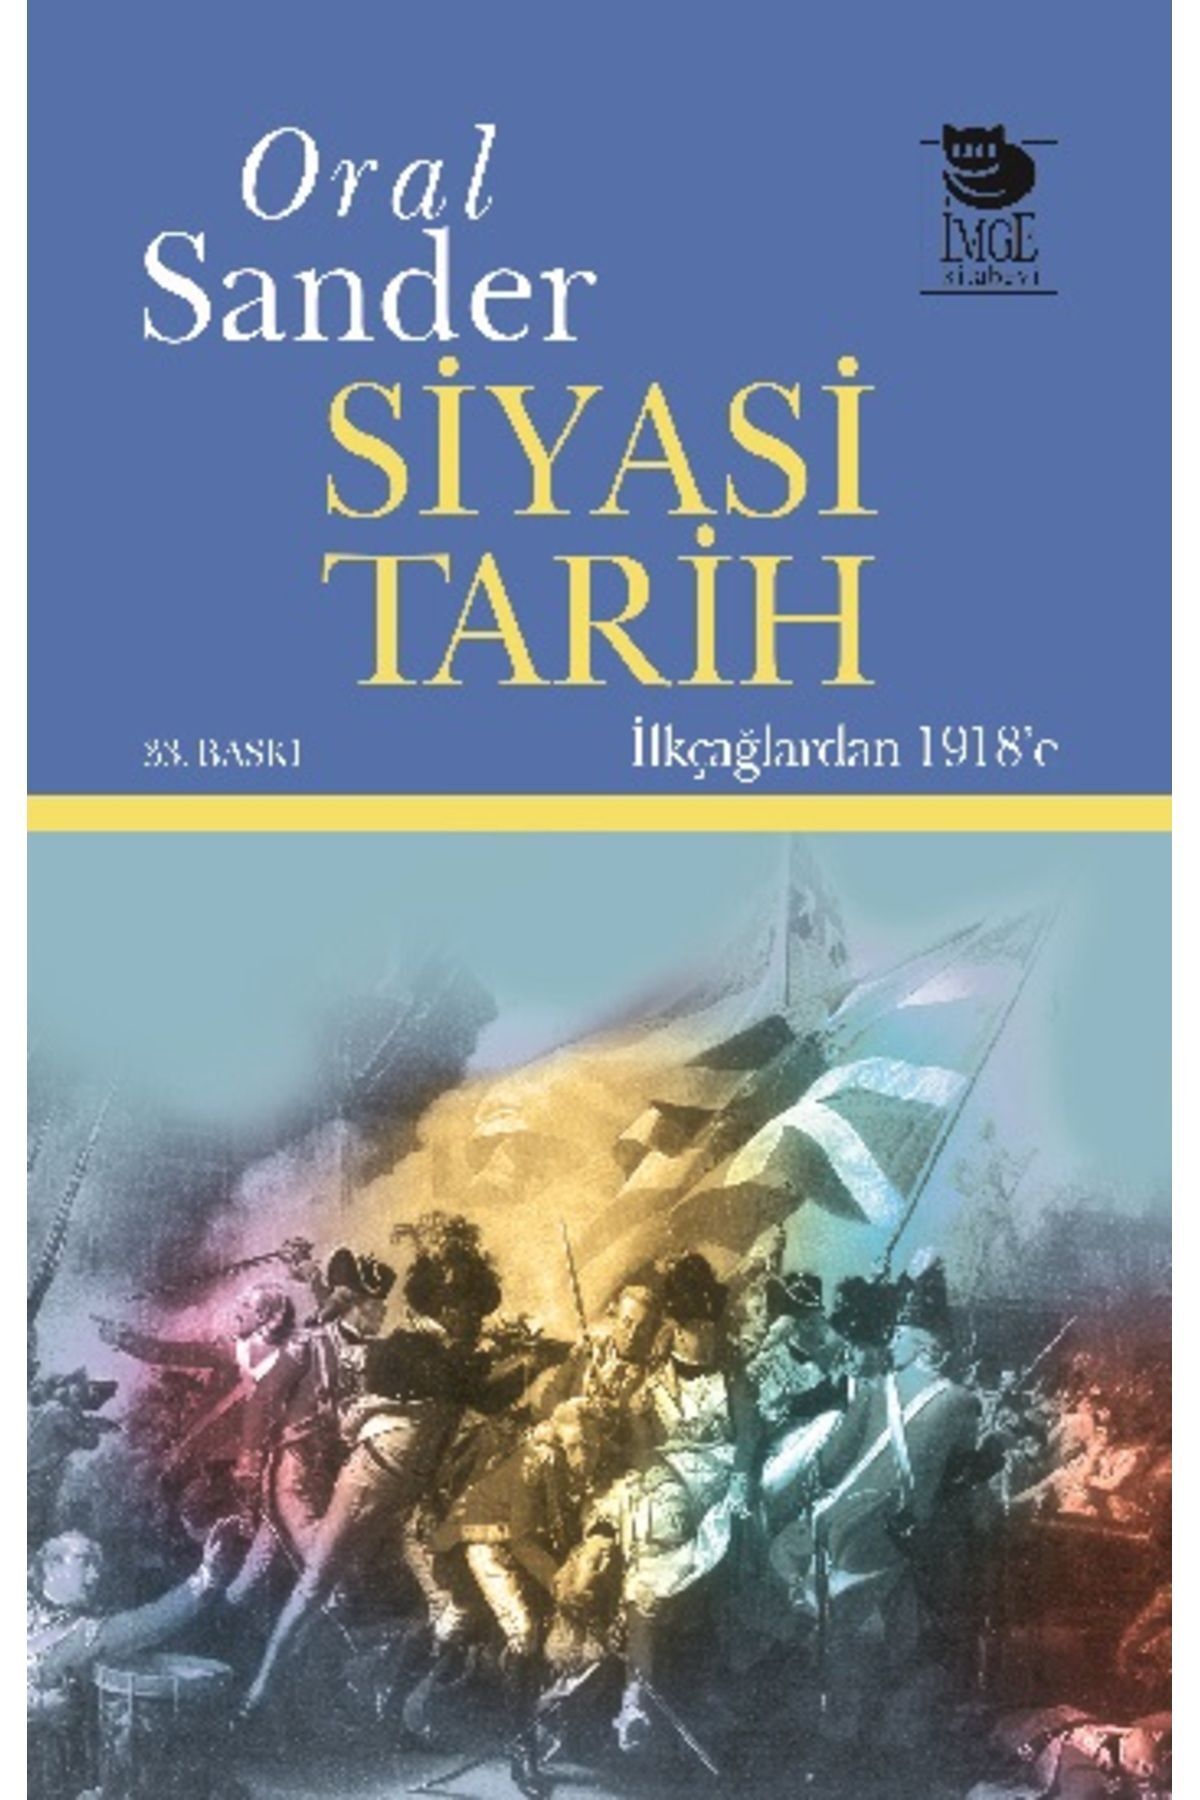 İmge Kitabevi Yayınları Siyasi Tarih İlk Çağlardan 1918'e Oral Sander